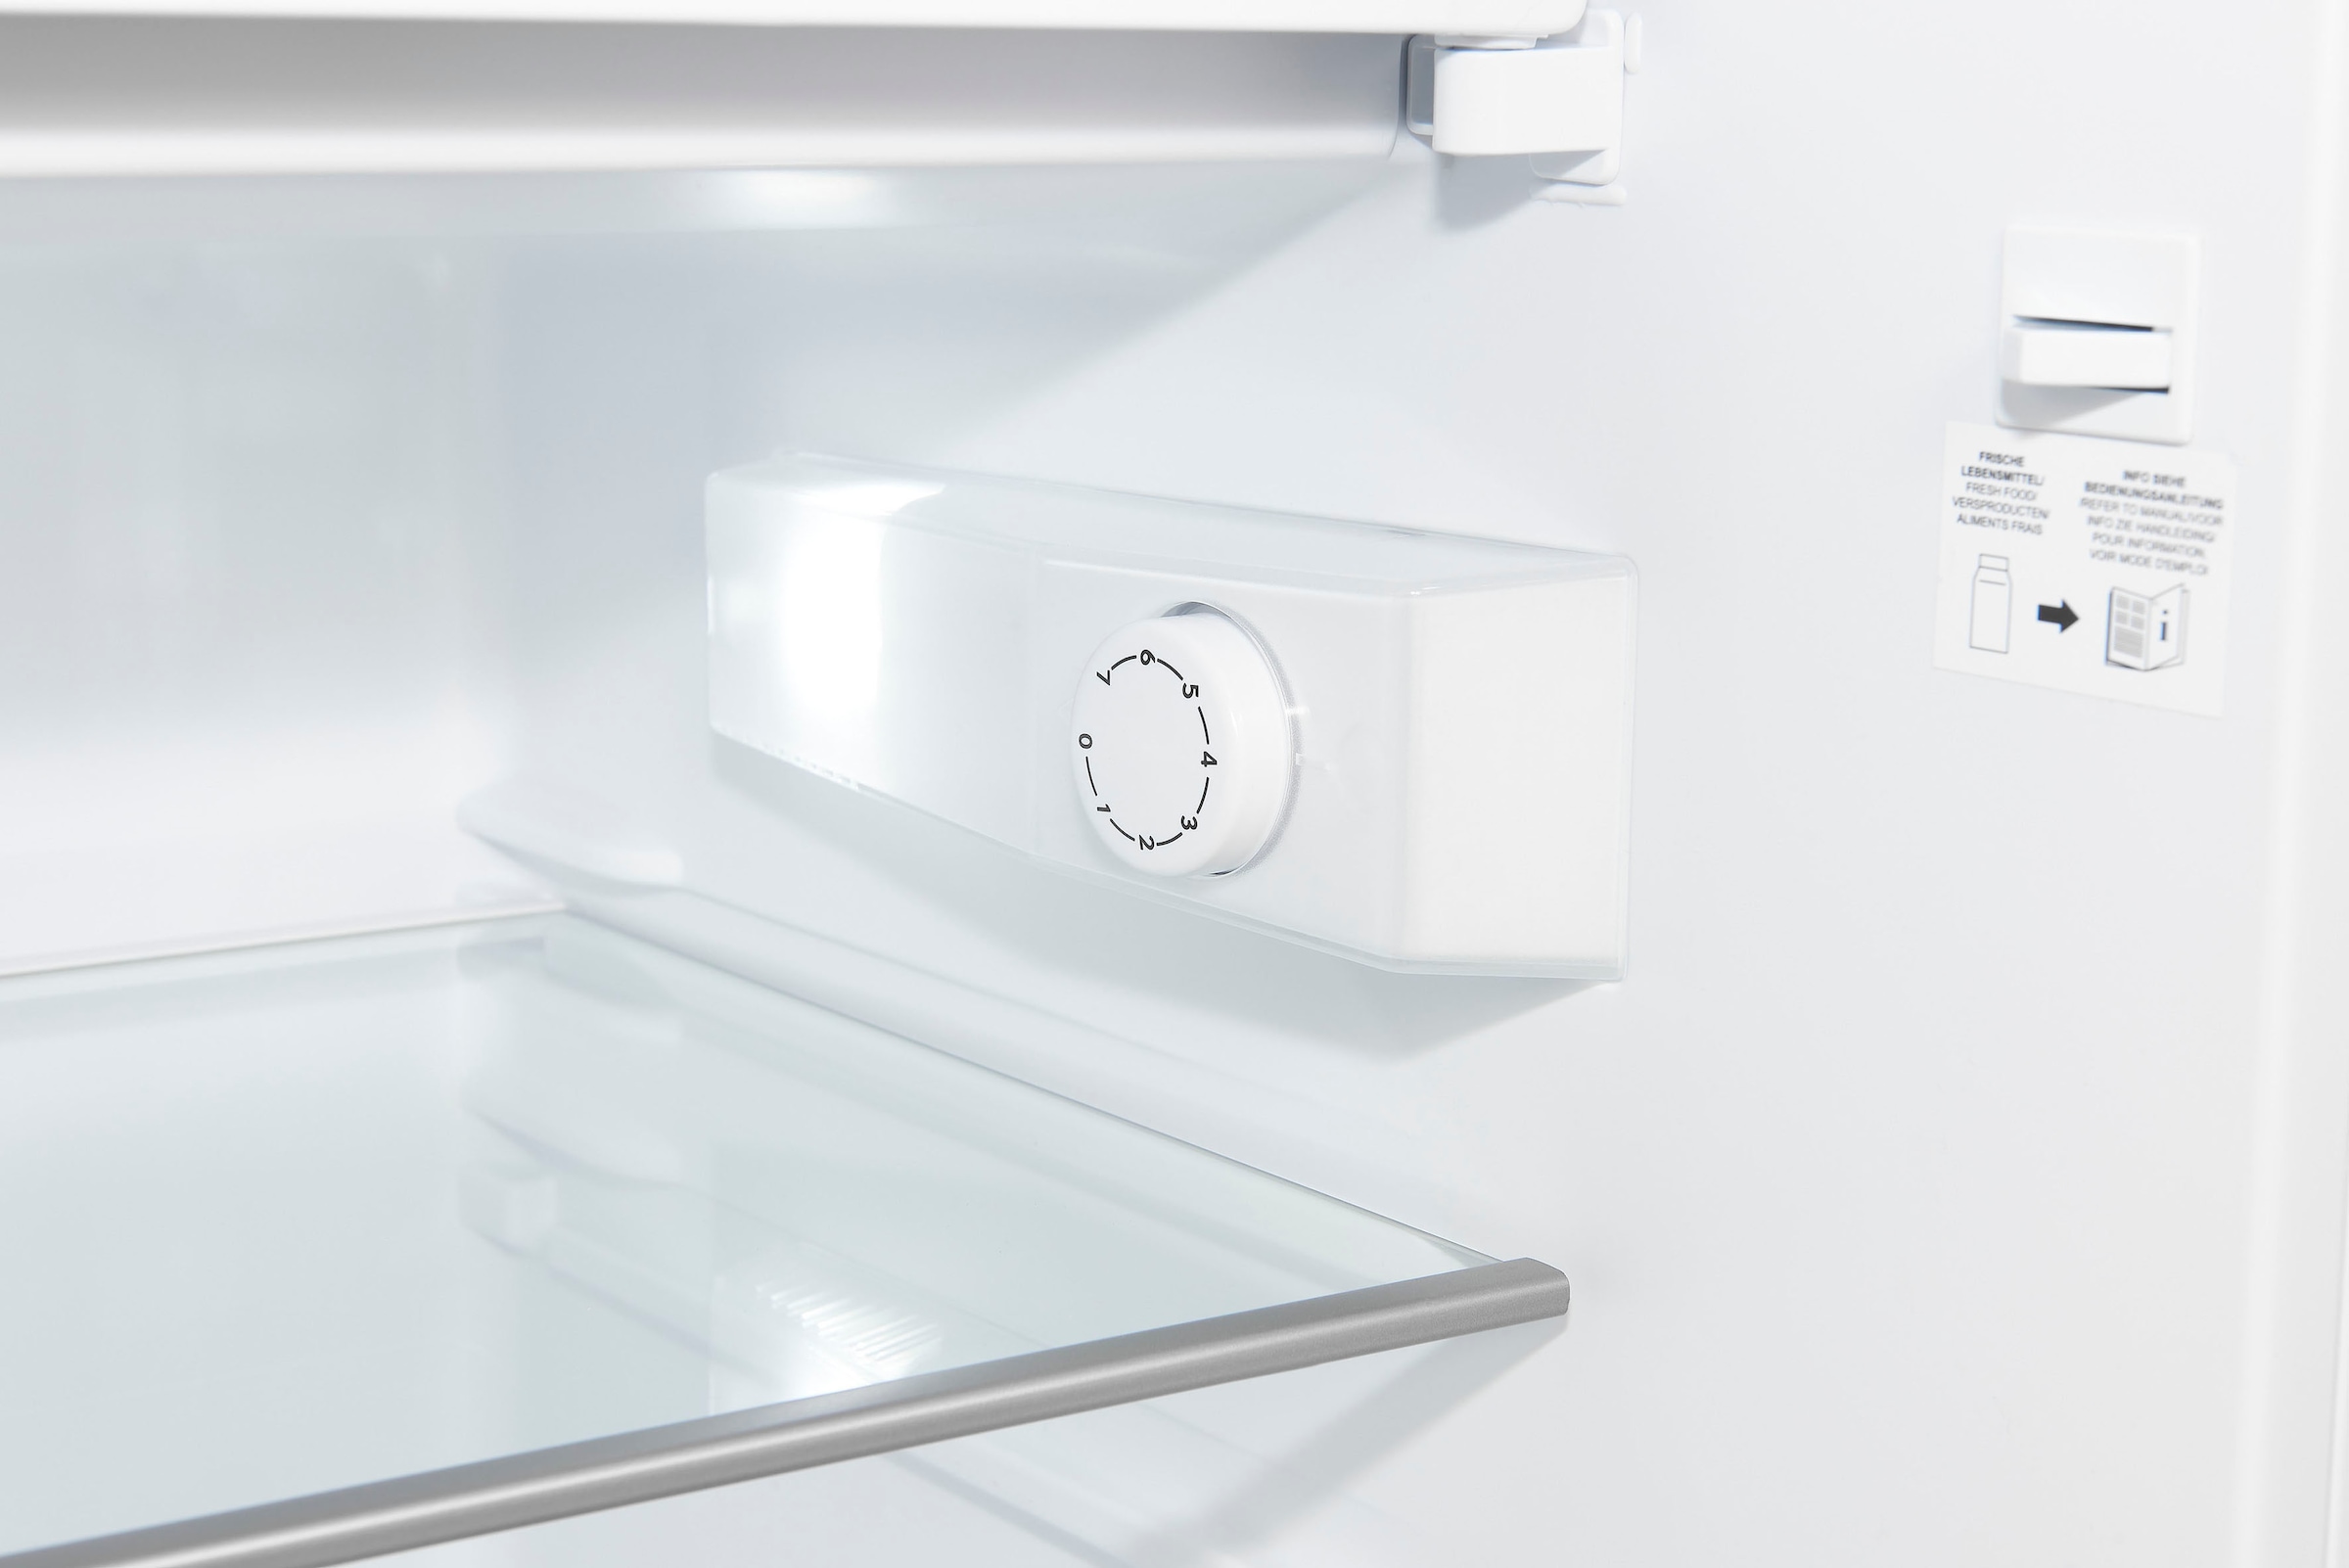 exquisit Kühlschrank »KS16-4-H-010D«, KS16-4-H-010D inoxlook, 85 cm hoch, 56  cm breit jetzt online bei OTTO